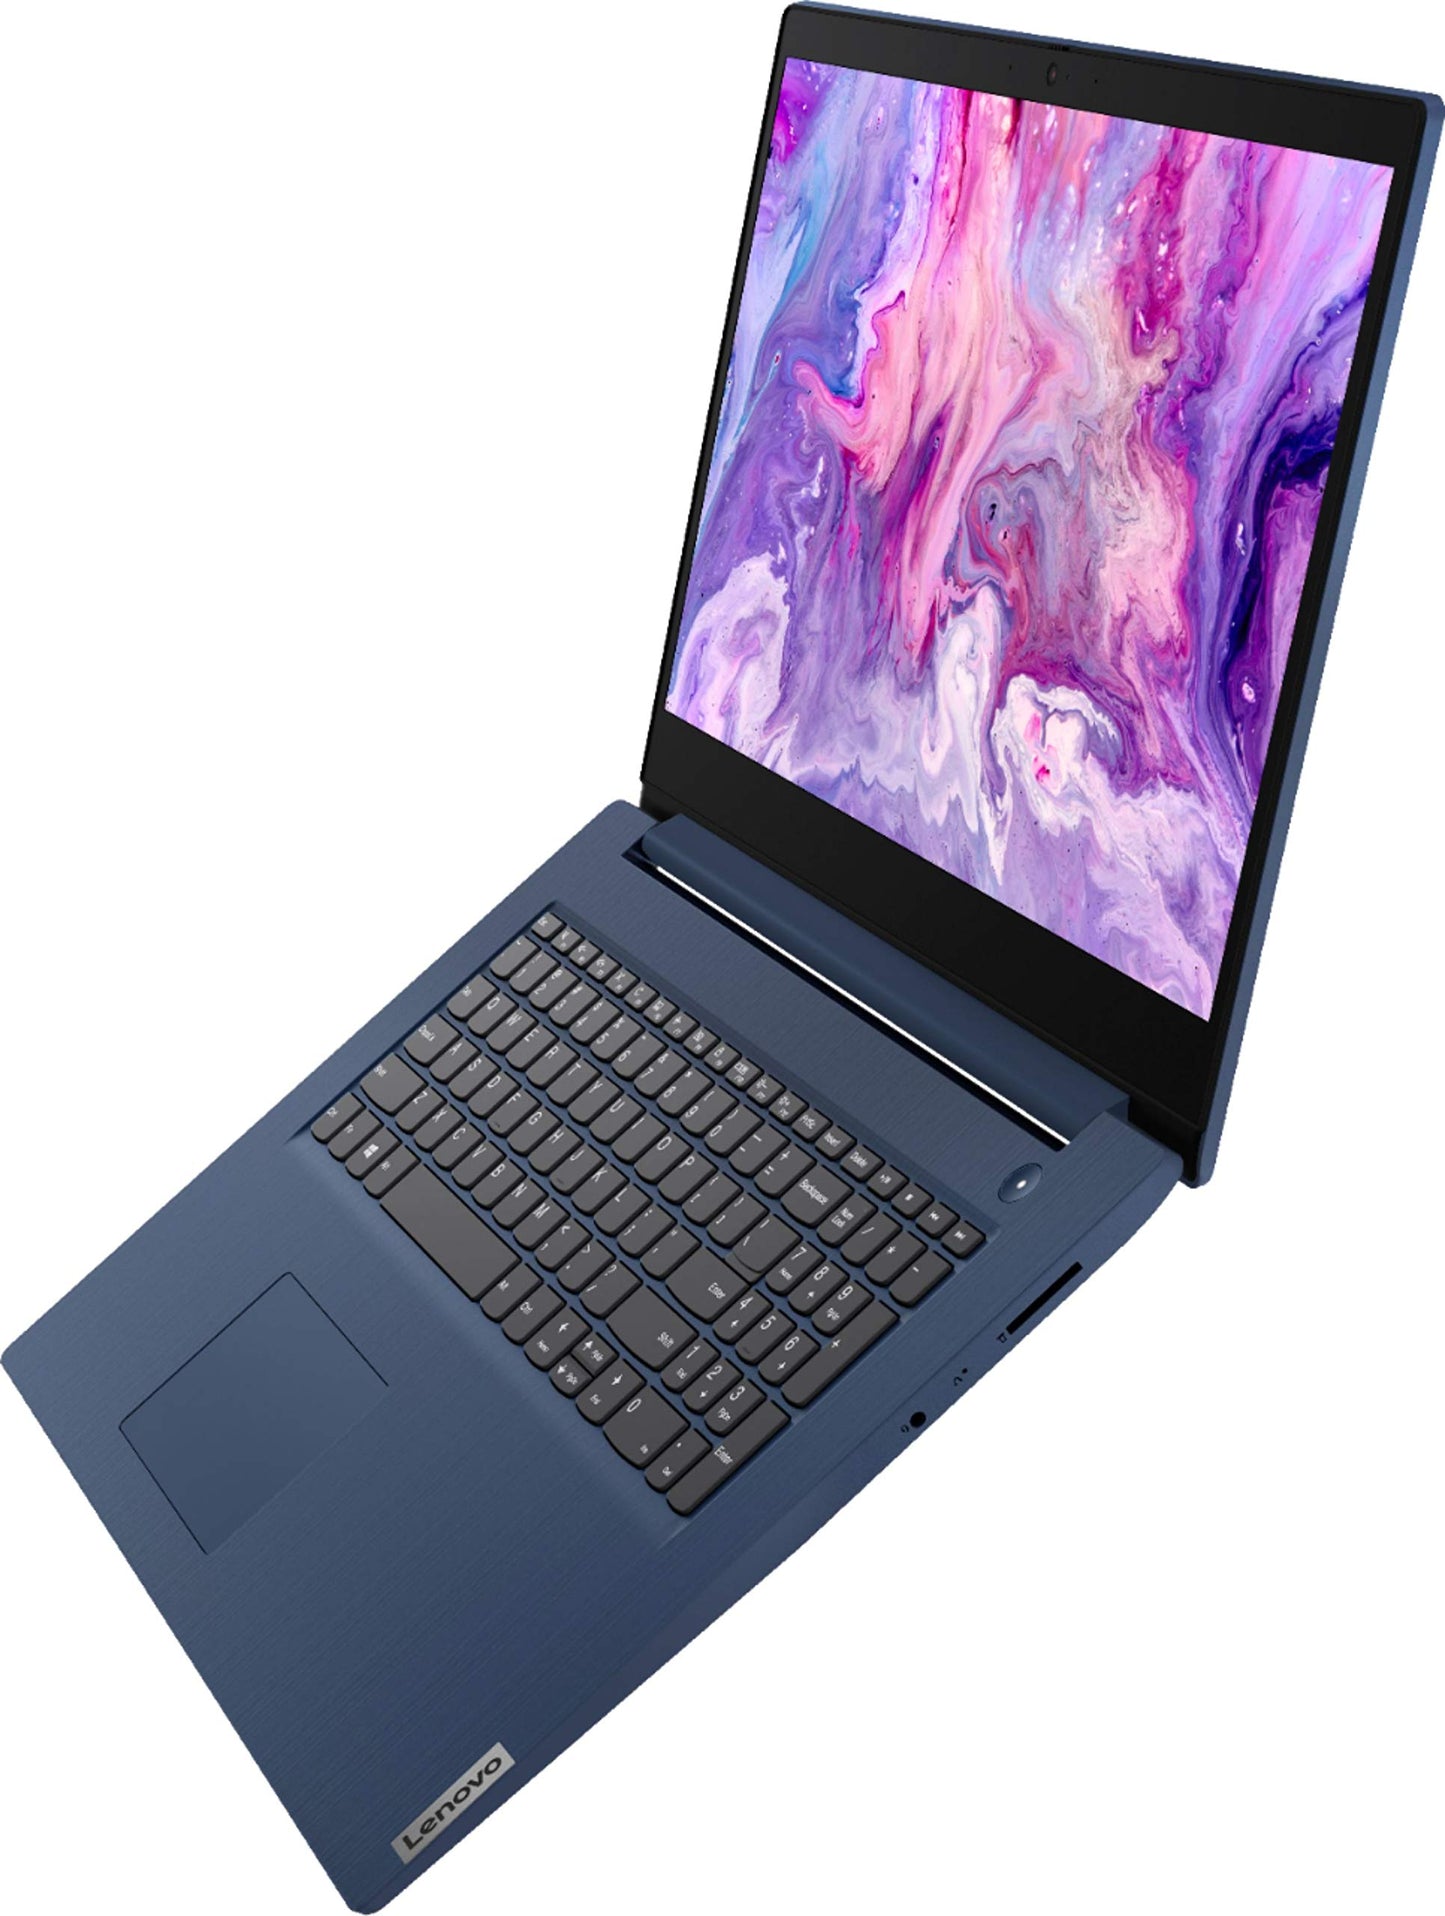 Lenovo IdeaPad 3 17.3" Laptop, 17.3" HD+ (1600 x 900) Display, Intel Core i5-1035G1 Quad Core Processor, 8GB DDR4 RAM, 256GB M.2 SSD, Intel UHD Graphics, Windows 10, Abyss Blue, w/TGCD Accessory